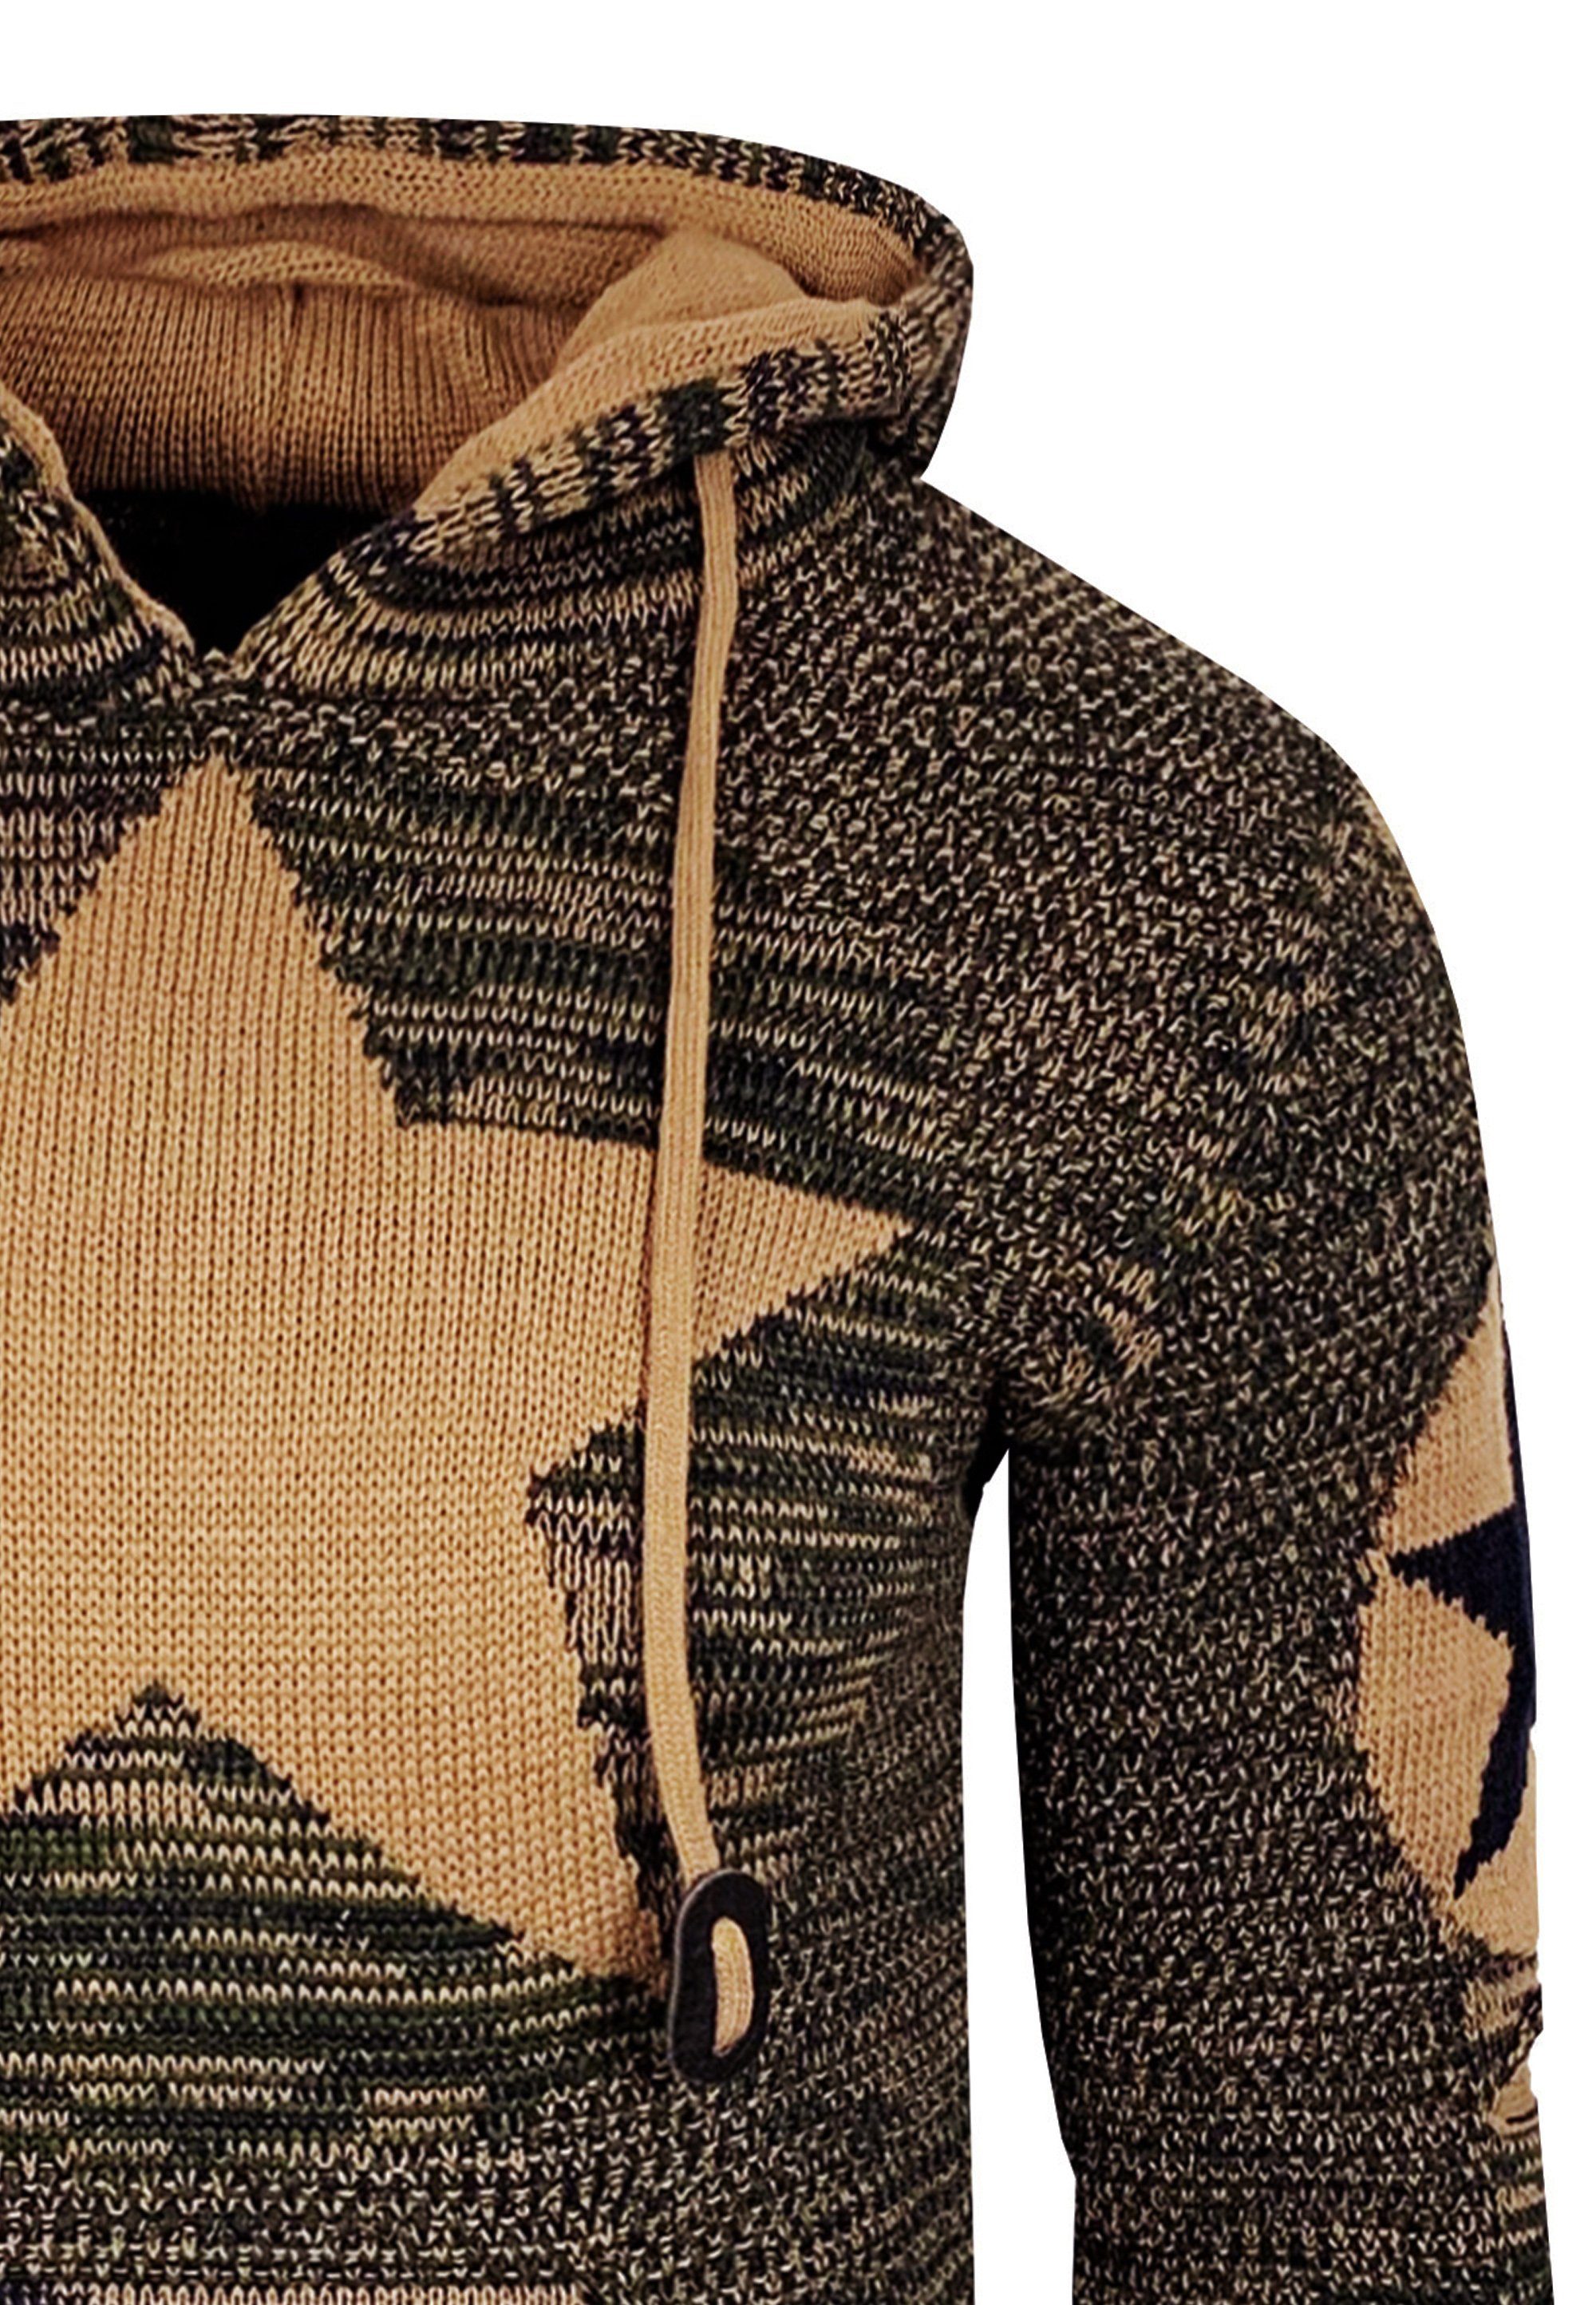 Stern-Design Kapuzensweatshirt Rusty braun-schwarz mit großem Neal